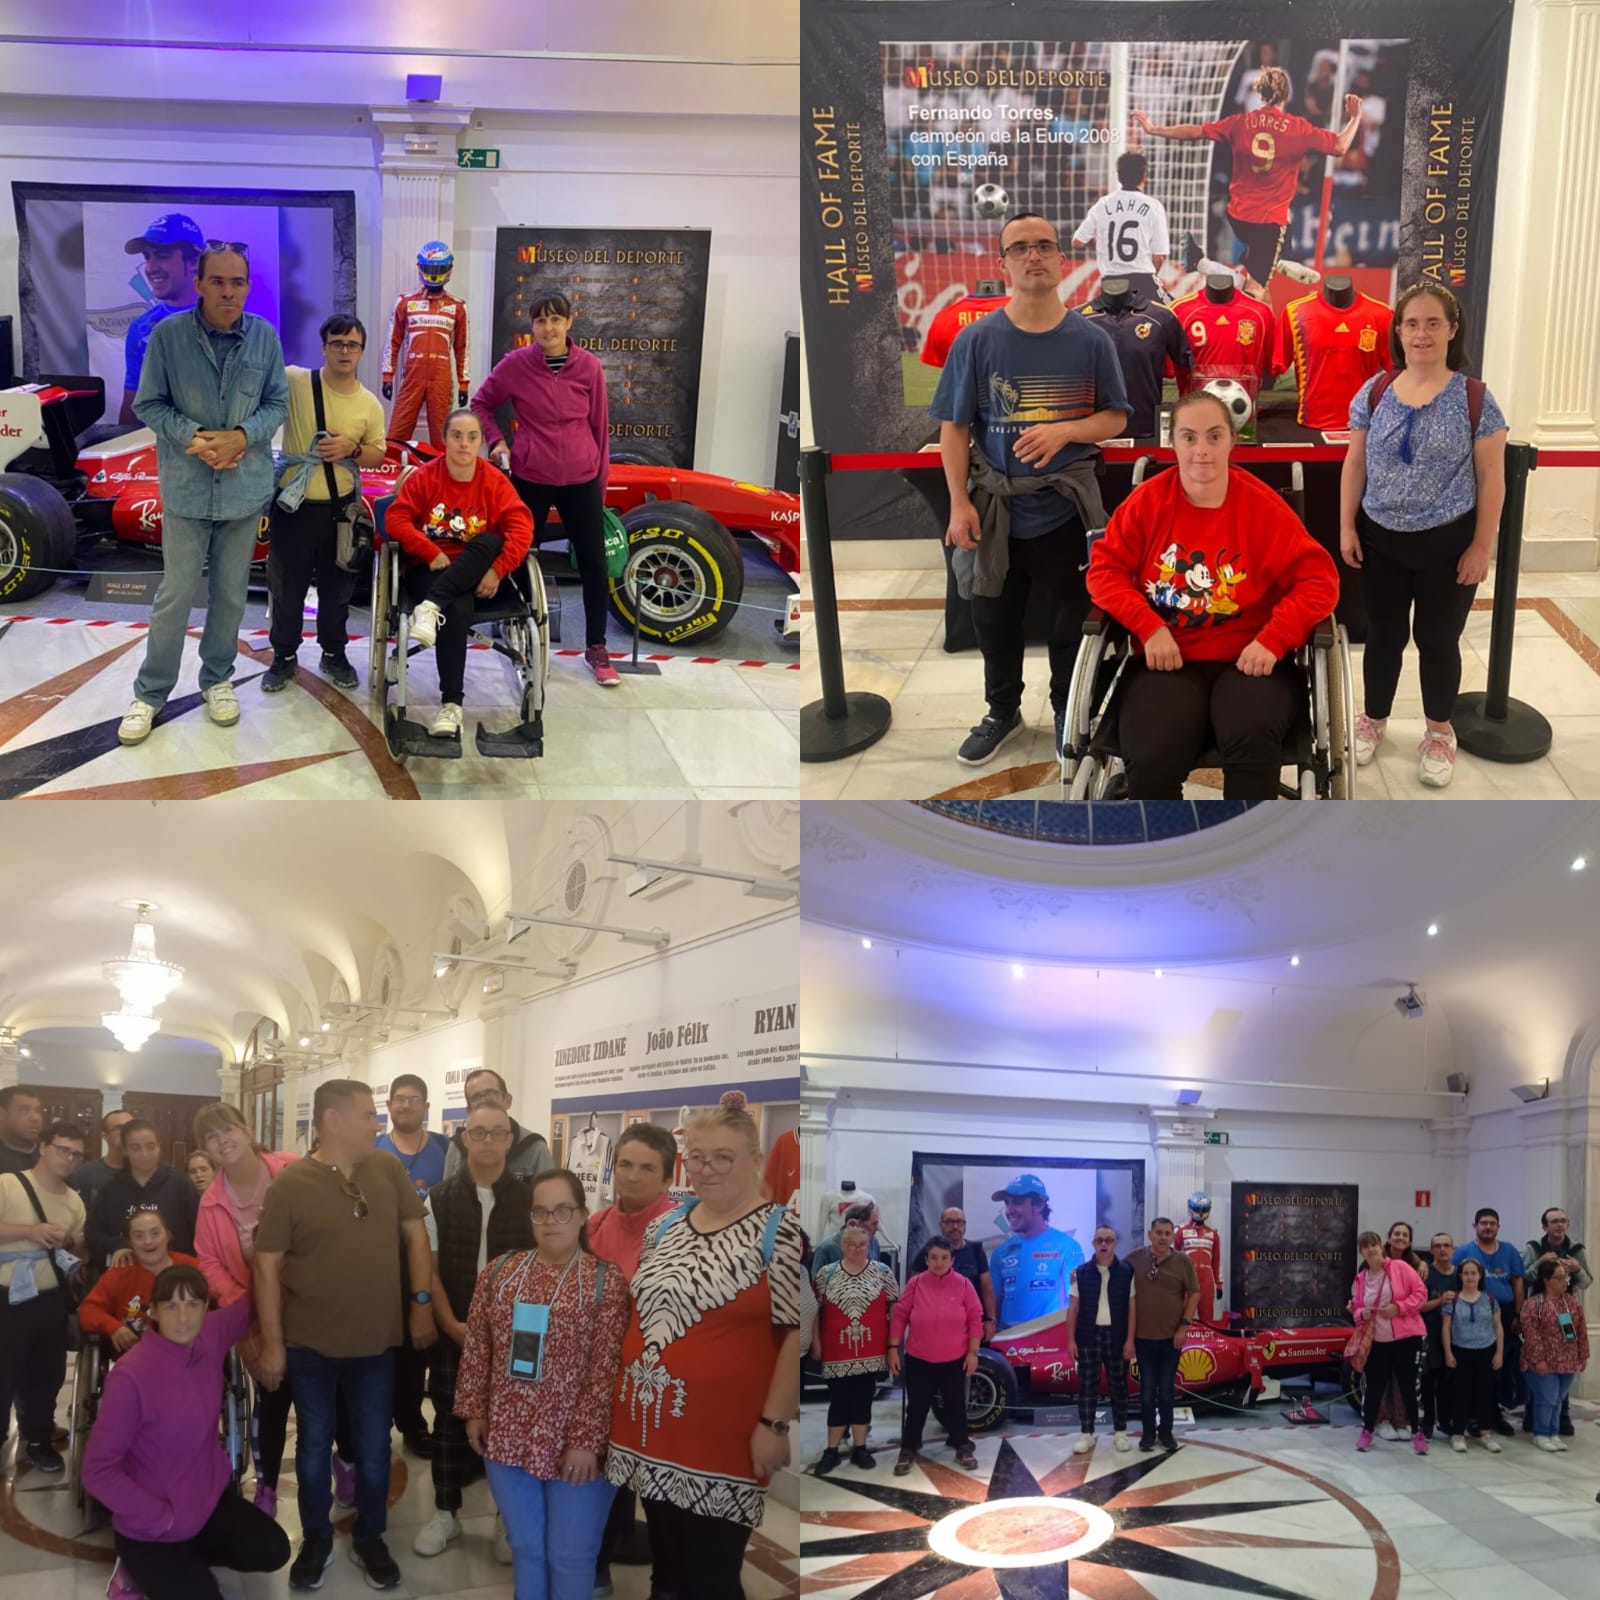 Persones amb discapacitat intel·lectual del CO Carrús de l'IVASS a Elx visiten l'exposició ‘Llegendes de l'Esport’ a la Sala CAM